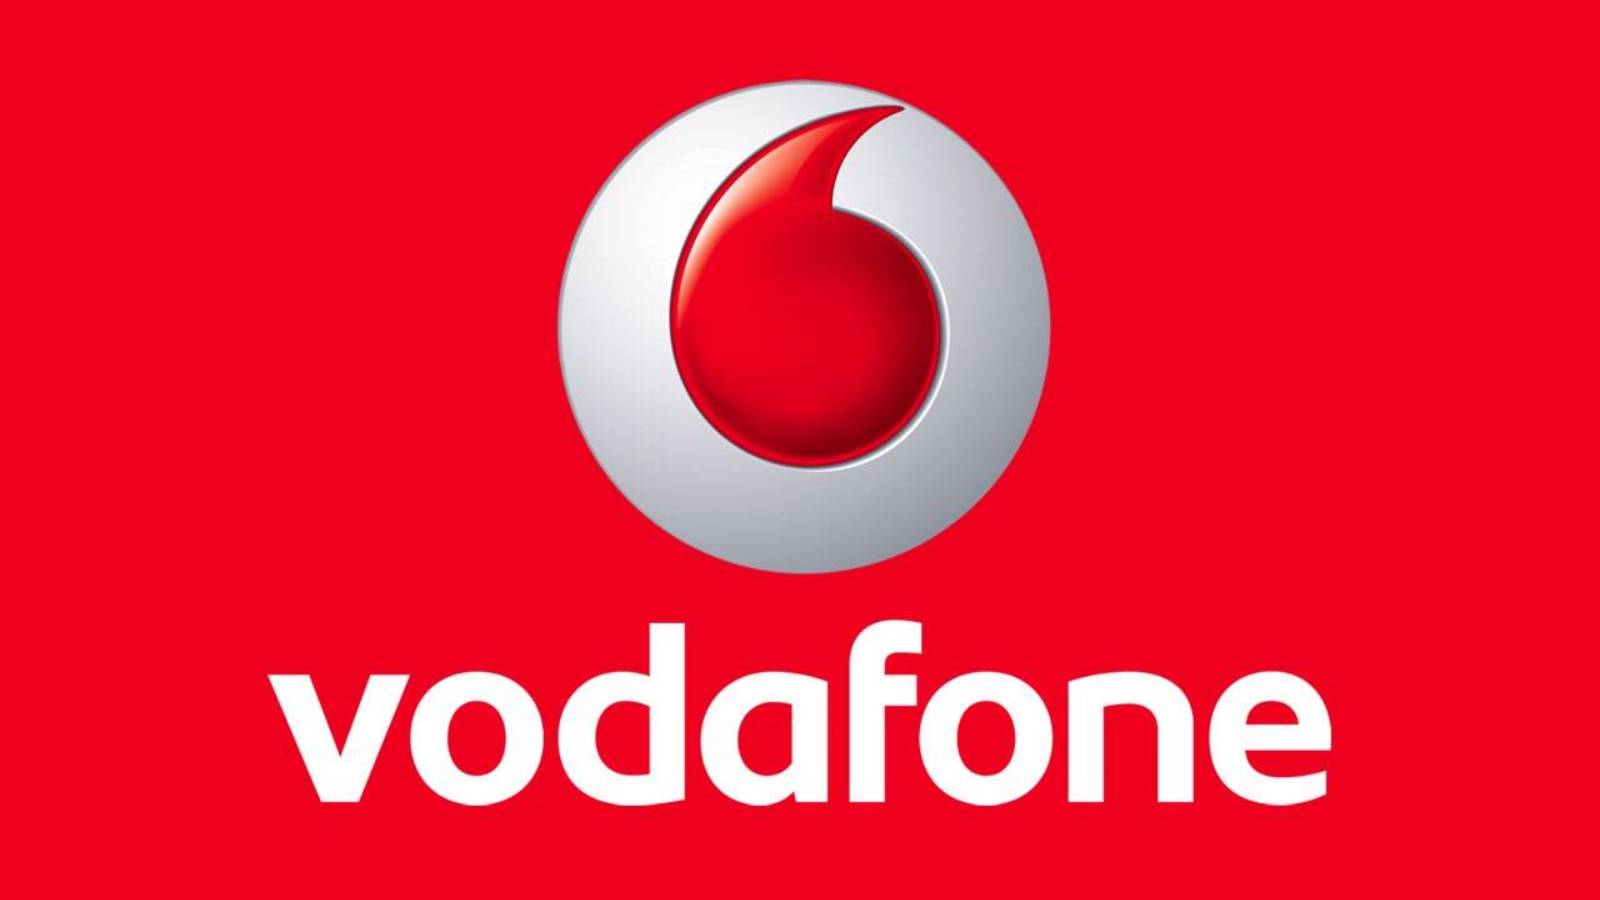 Vodafone bereitet Kundenüberraschung KOSTENLOSE Samsung-Telefone vor